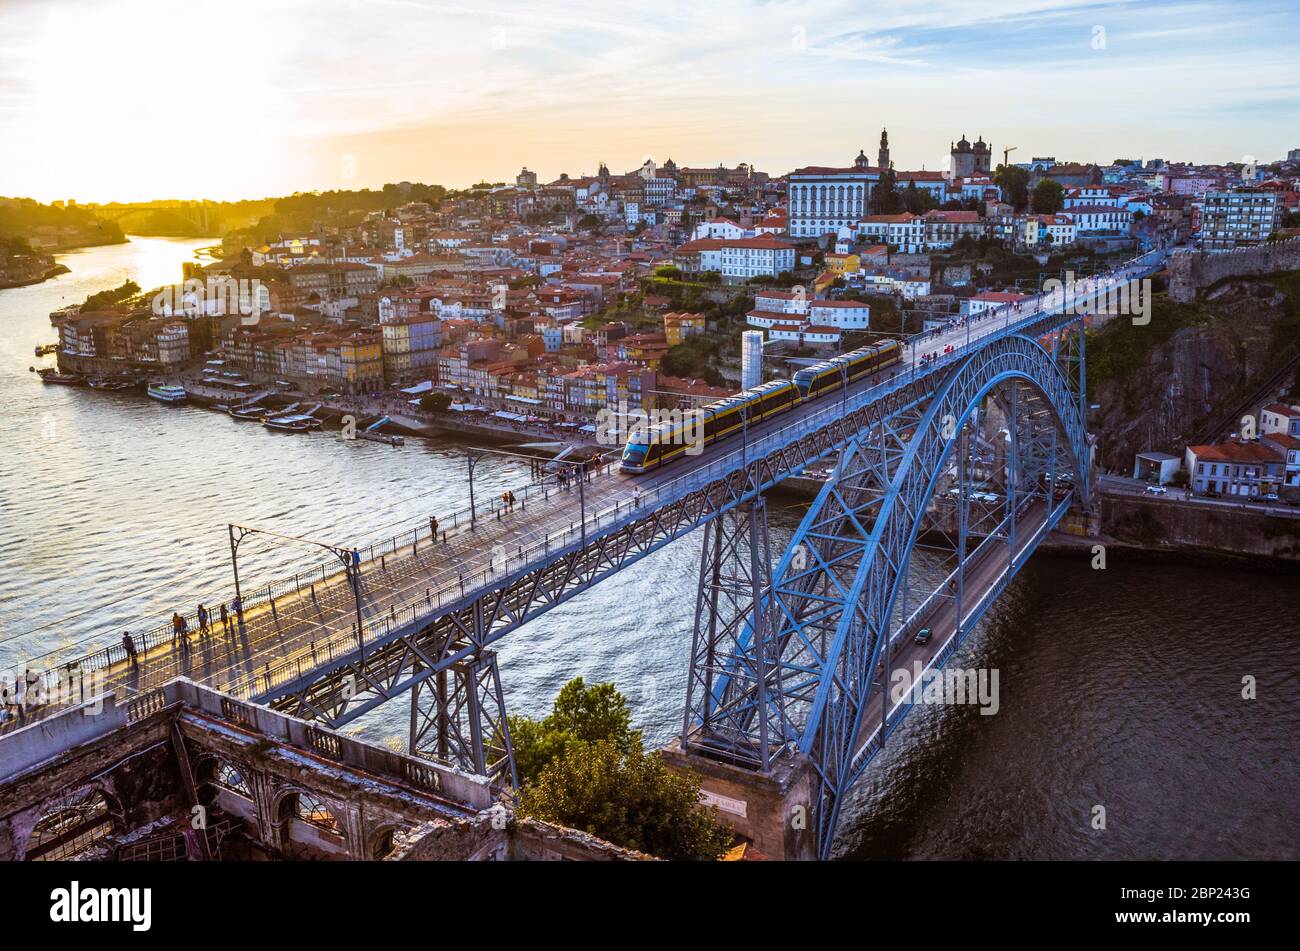 Porto, Portugal: BEI Sonnenuntergang fährt ein Zug auf der Dom Luis I Brücke über den Fluss Douro, der Porto und Vila Nova de Gaia verbindet und zwischen den Jahren 1881 und 188 gebaut wurde Stockfoto